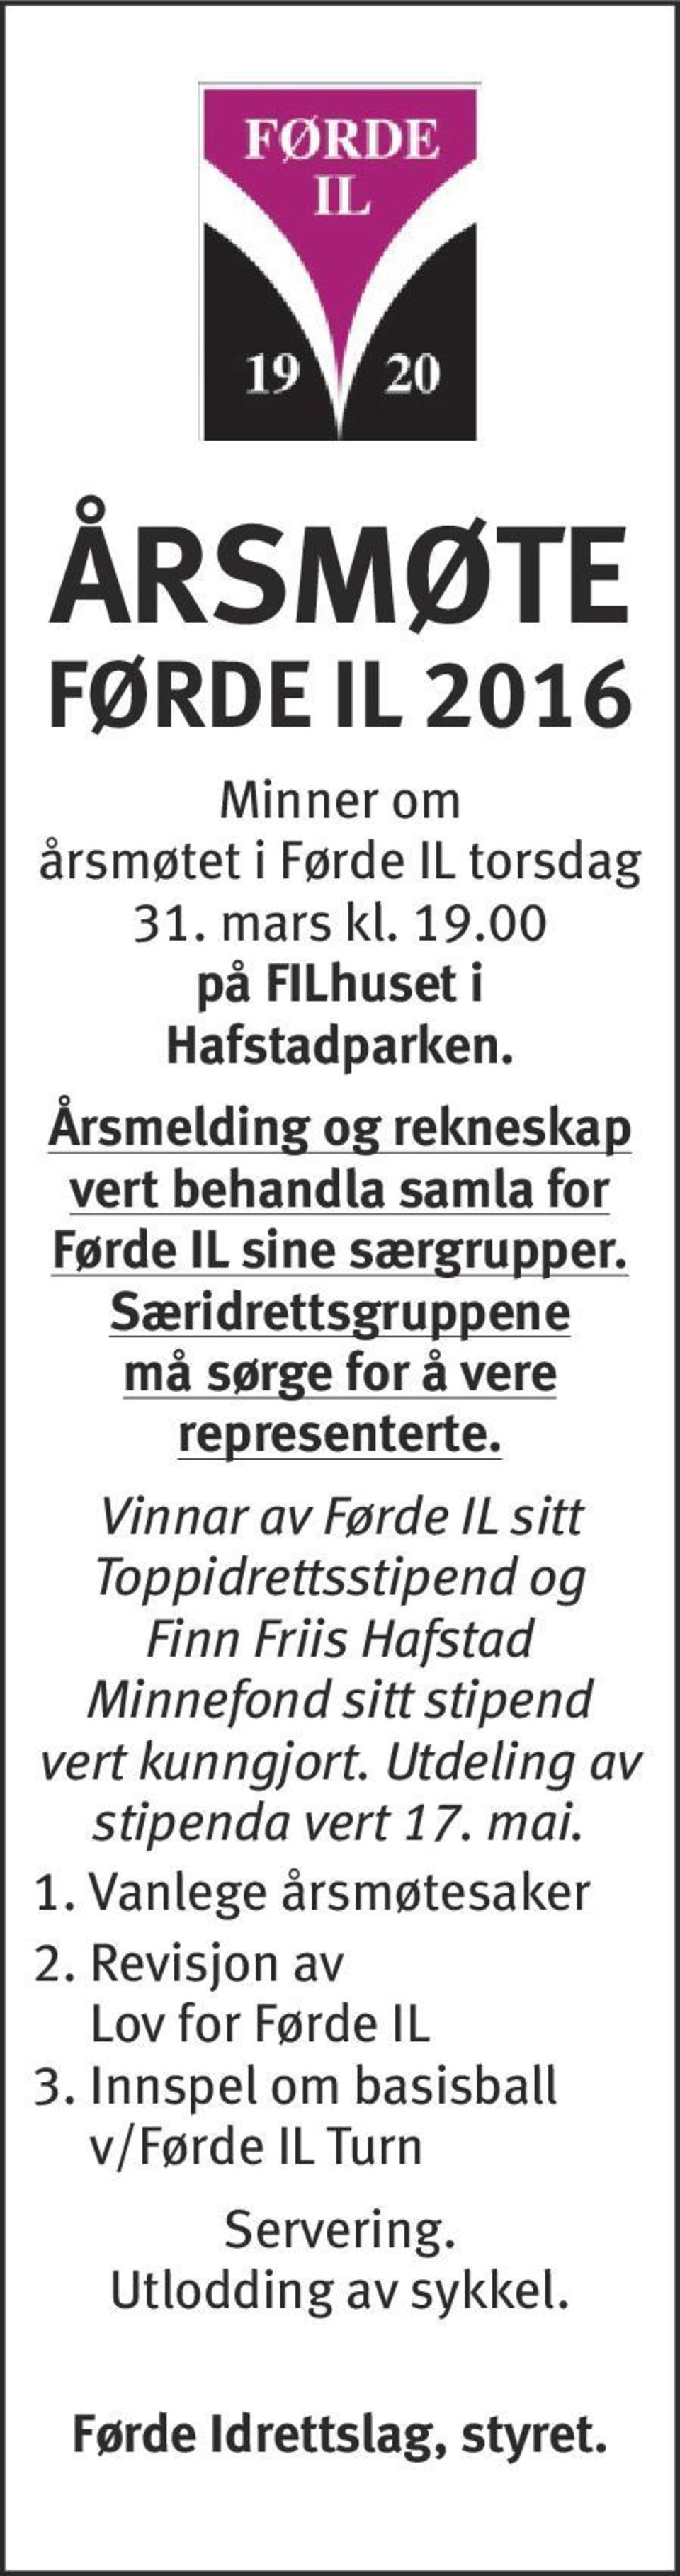 Vinnar av Førde IL sitt Toppidrettsstipend og Finn Friis Hafstad Minnefond sitt stipend vert kunngjort.